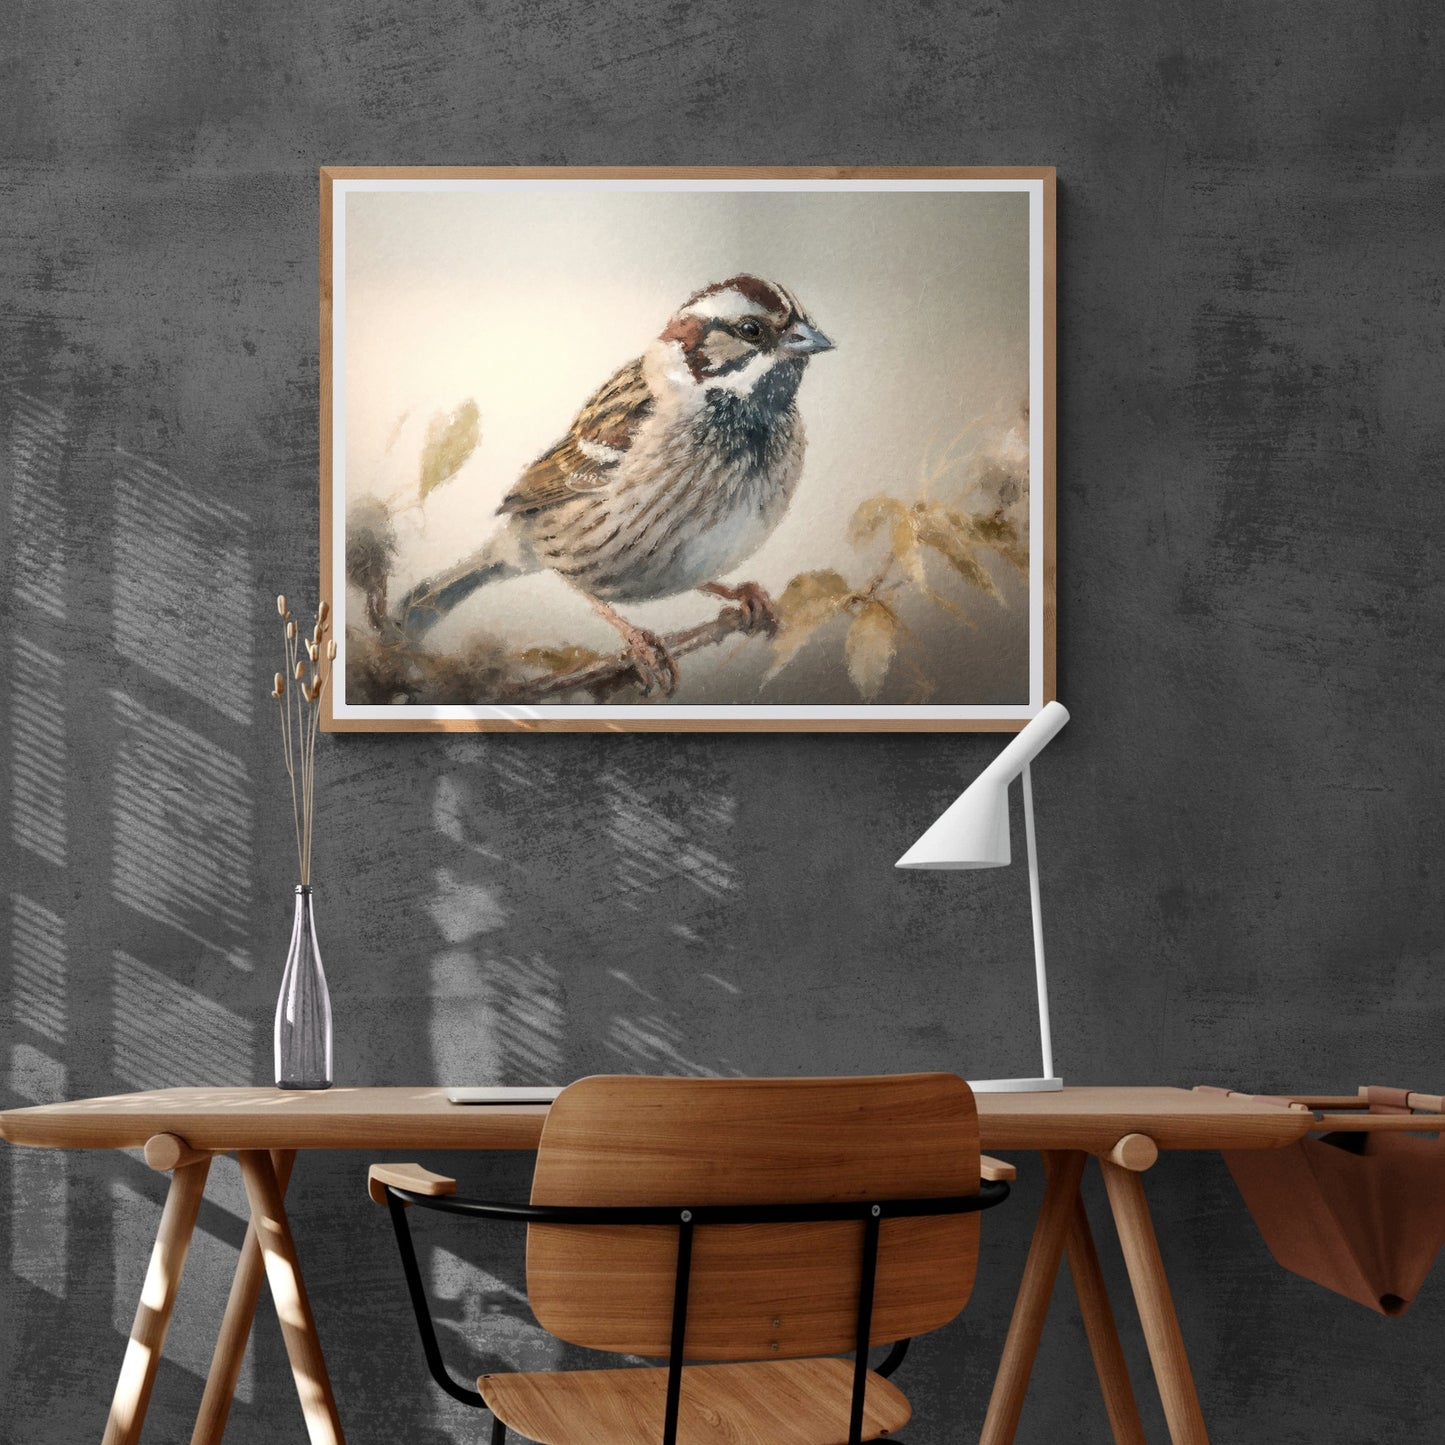 Vintage-Vogel-Malerei-Papier-Posterdrucke, Vintage-Ölgemälde-Stil und Wandkunst eines Spatzen, der auf einem Zweig sitzt, Vogelbeobachtungsdruck